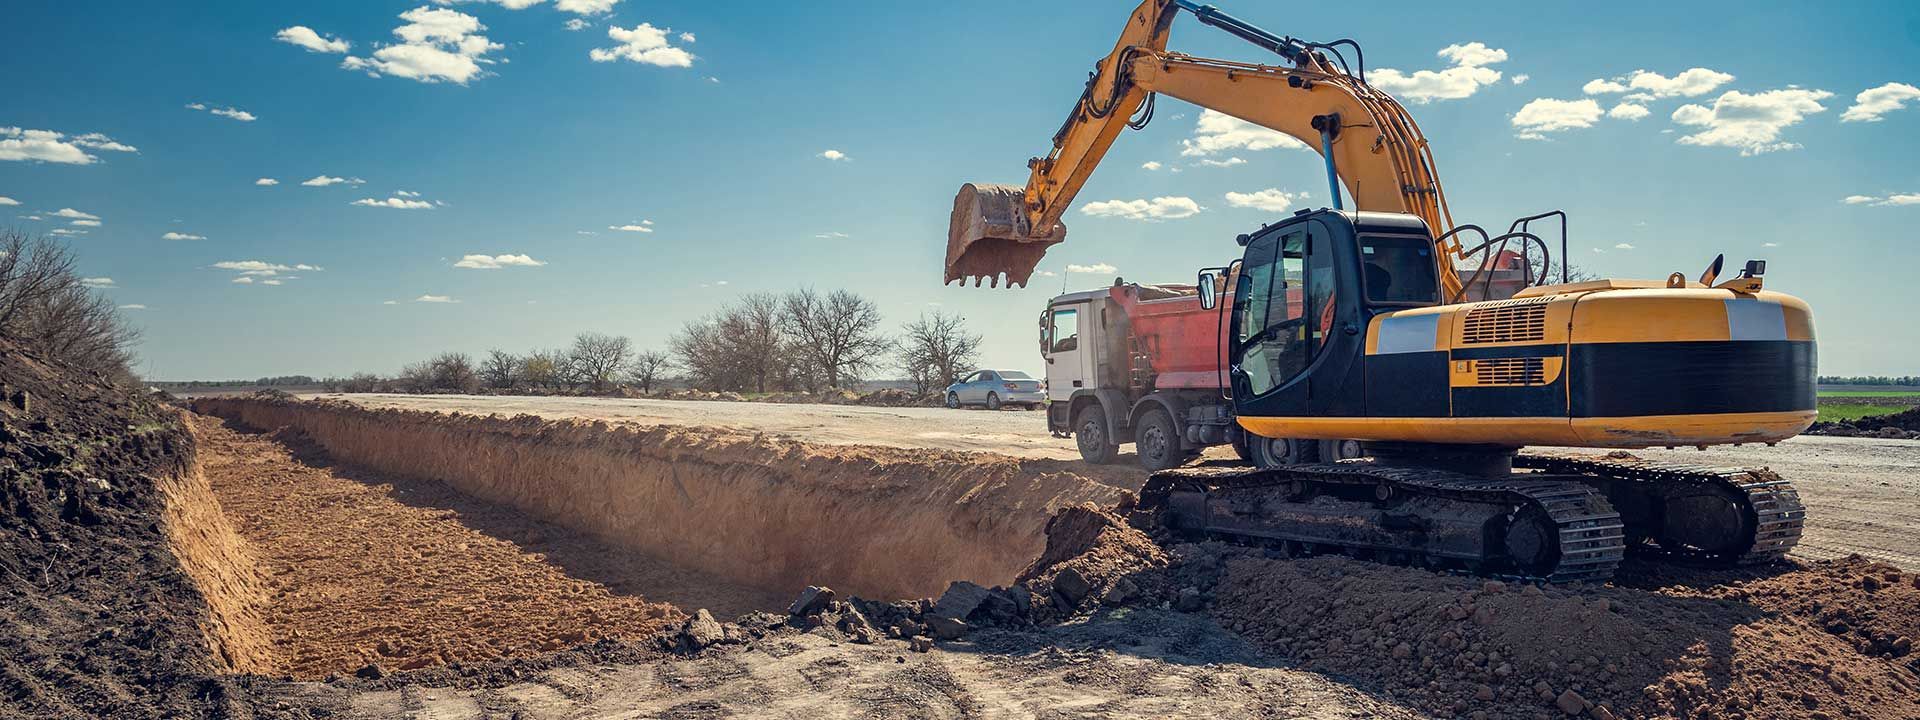 Engin de terrassement en train de creuser une grande tranchée